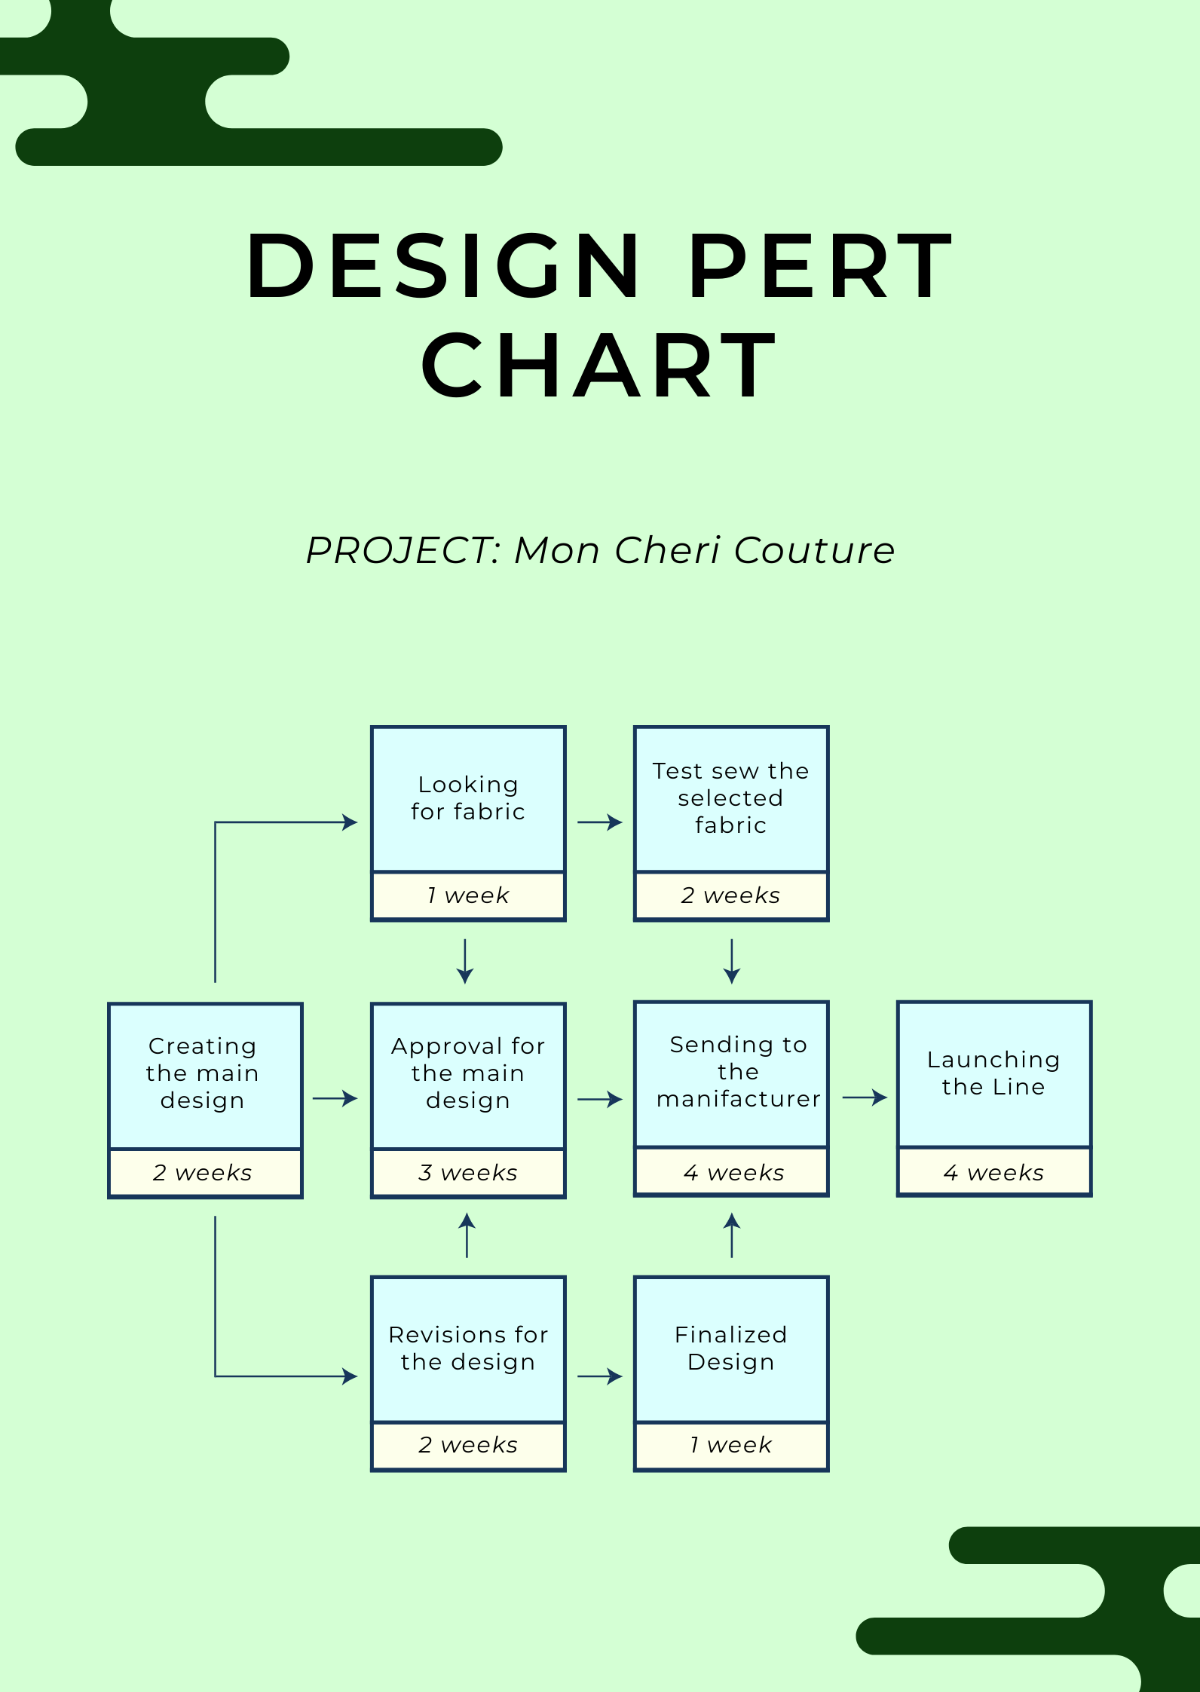 Design PERT Chart Template